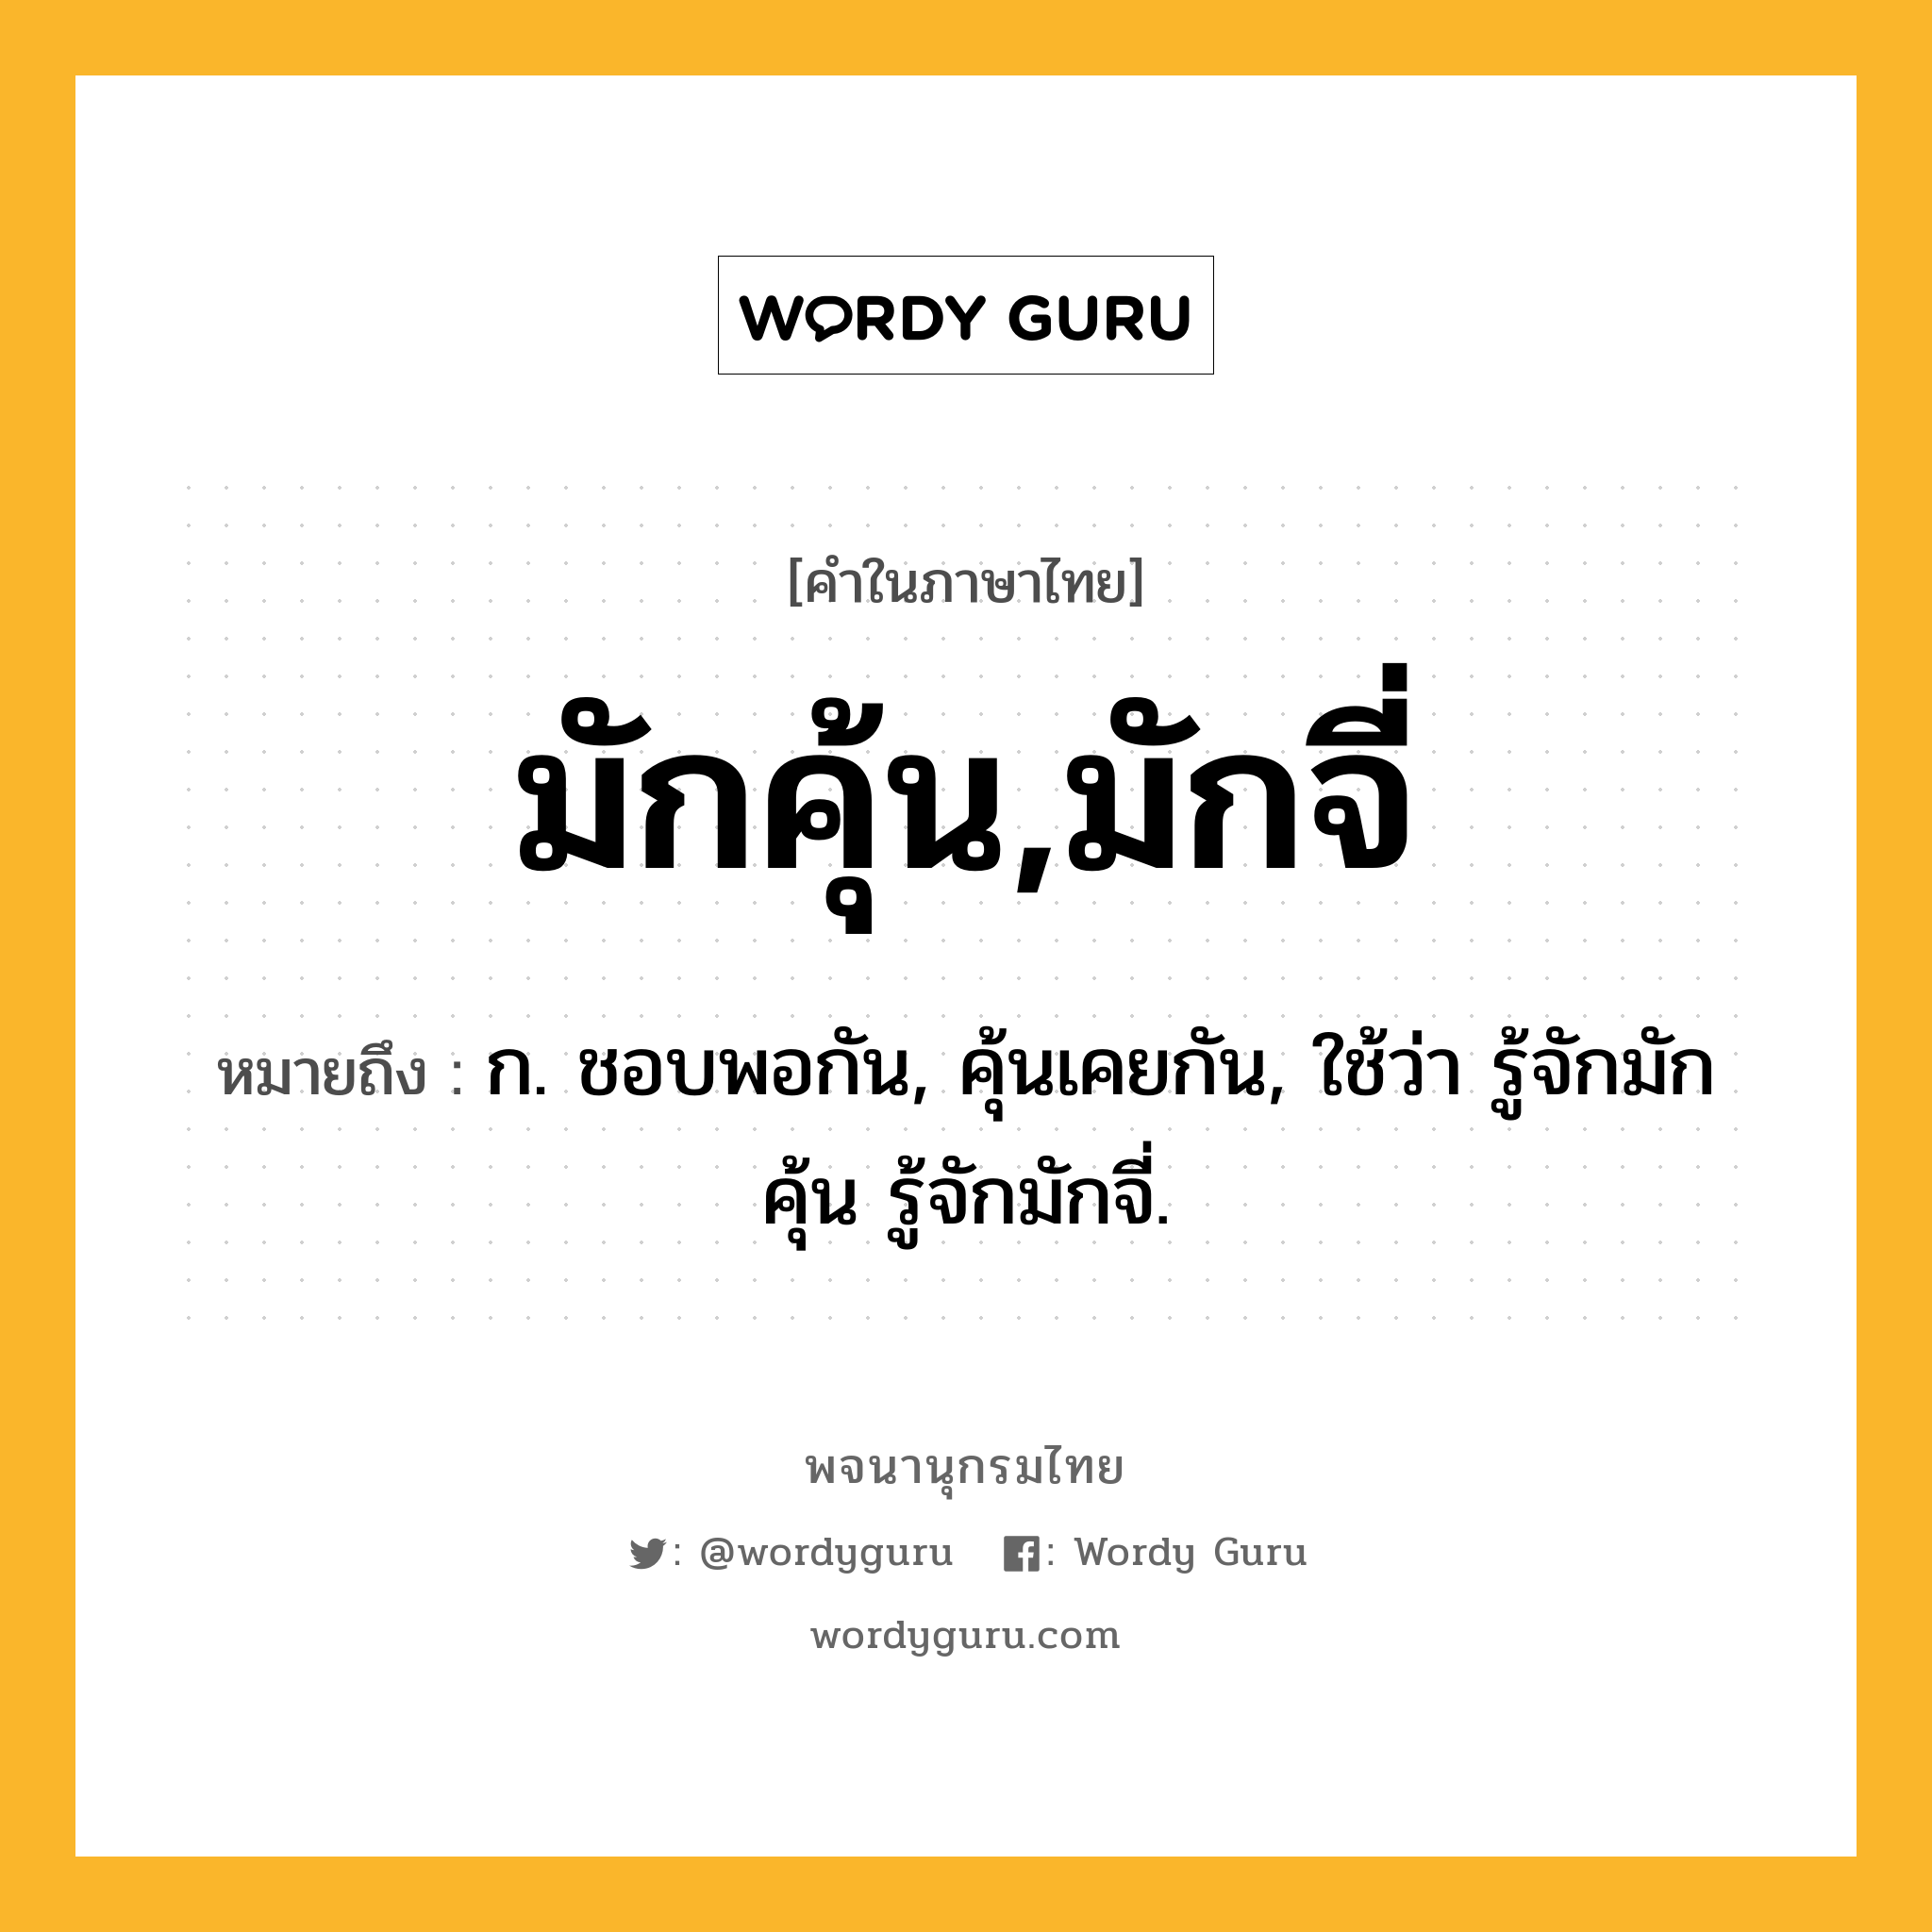 มักคุ้น,มักจี่ หมายถึงอะไร?, คำในภาษาไทย มักคุ้น,มักจี่ หมายถึง ก. ชอบพอกัน, คุ้นเคยกัน, ใช้ว่า รู้จักมักคุ้น รู้จักมักจี่.